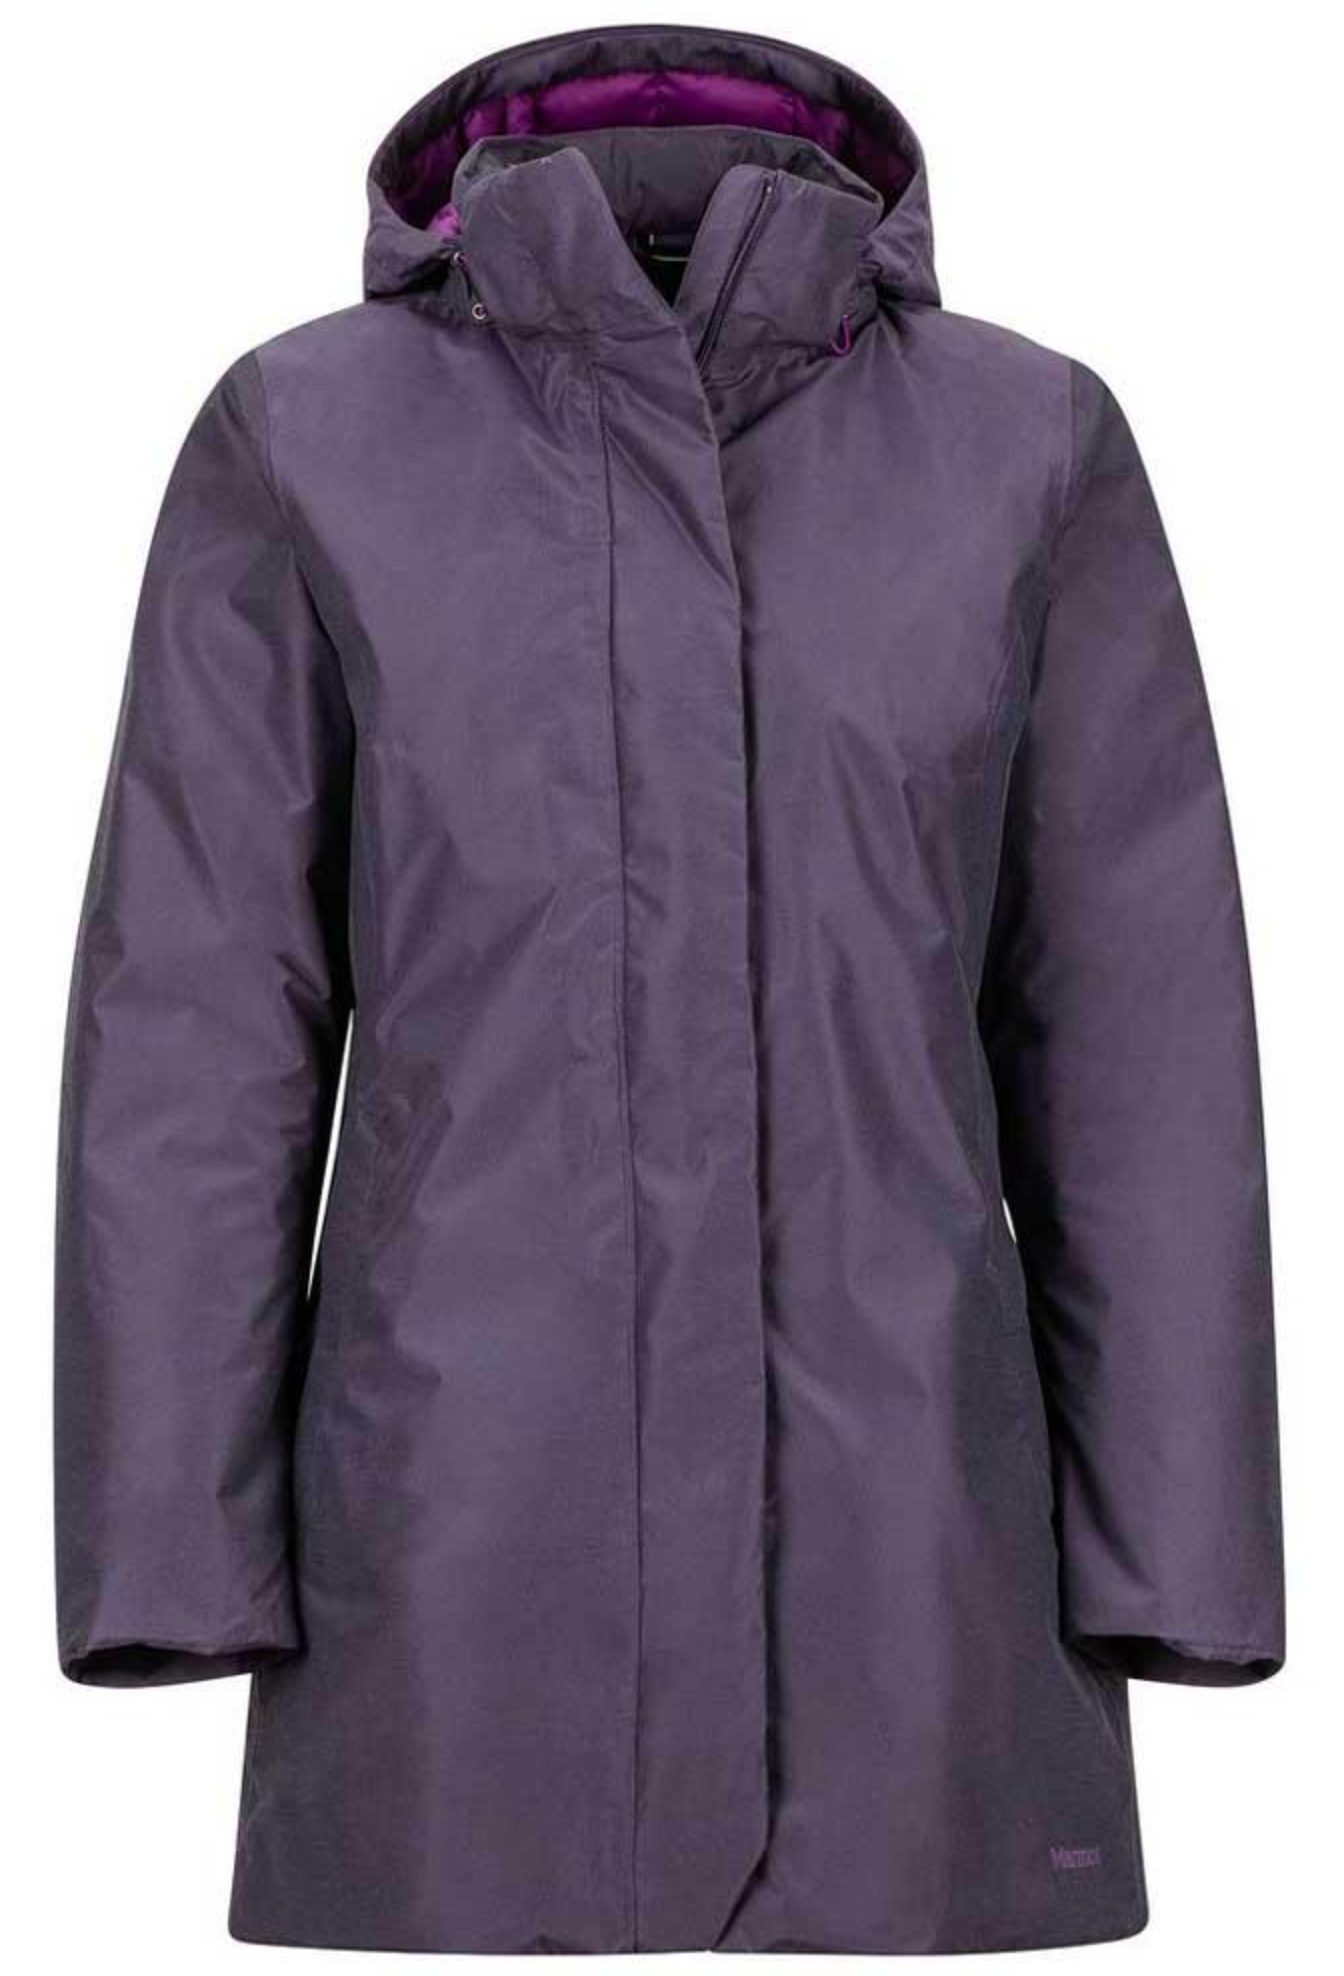 Marmot Women's Jacket Aitran Featherless Insulated Waterproof Purple